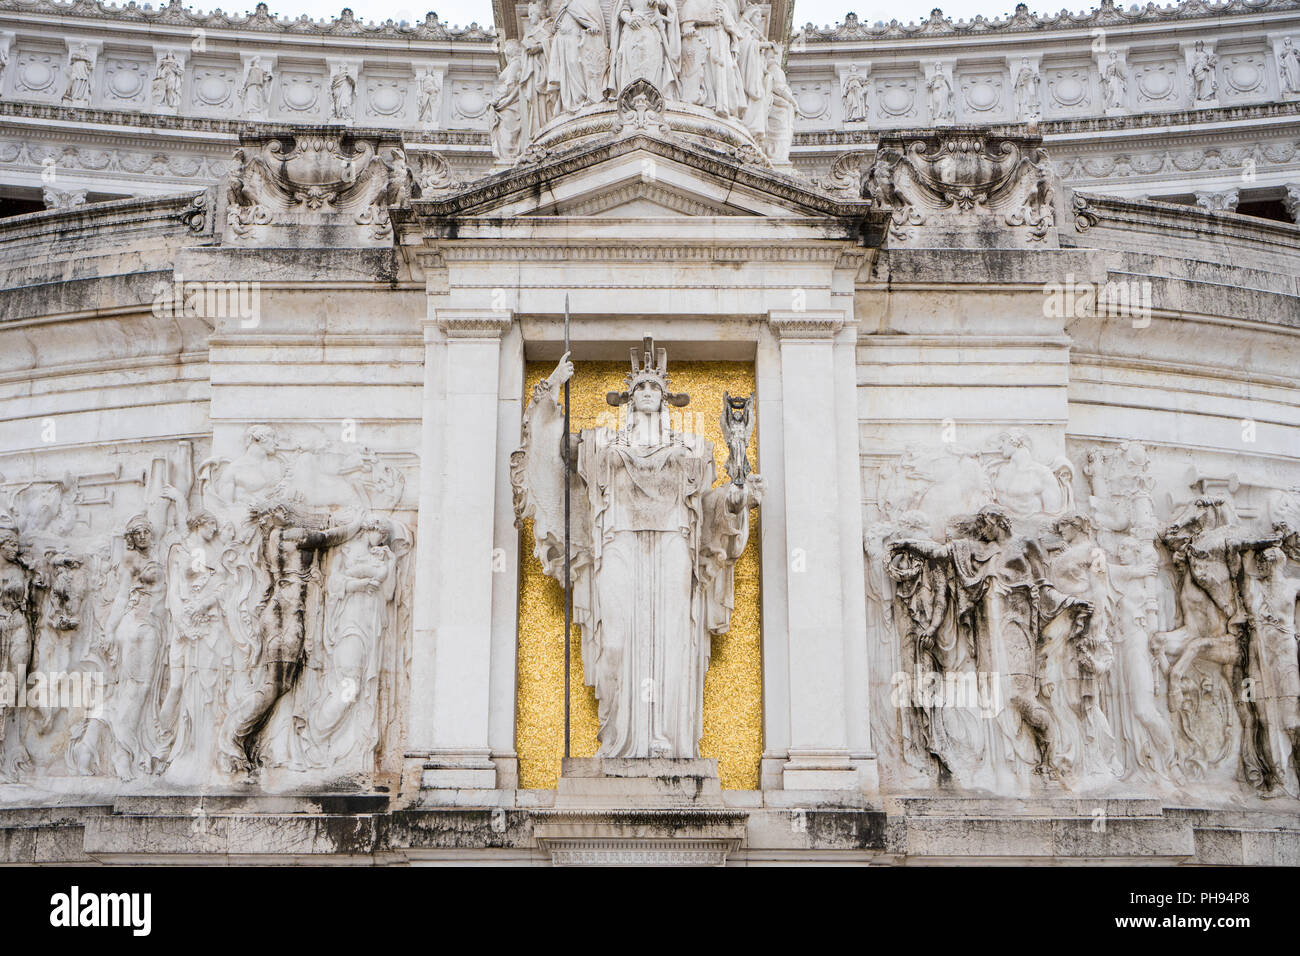 Déesse de Rome statue sur l'autel de la patrie ou Vittoriano, le monument à Rome construit pour Vittorio Emanuele II, le premier roi d'Italie Banque D'Images